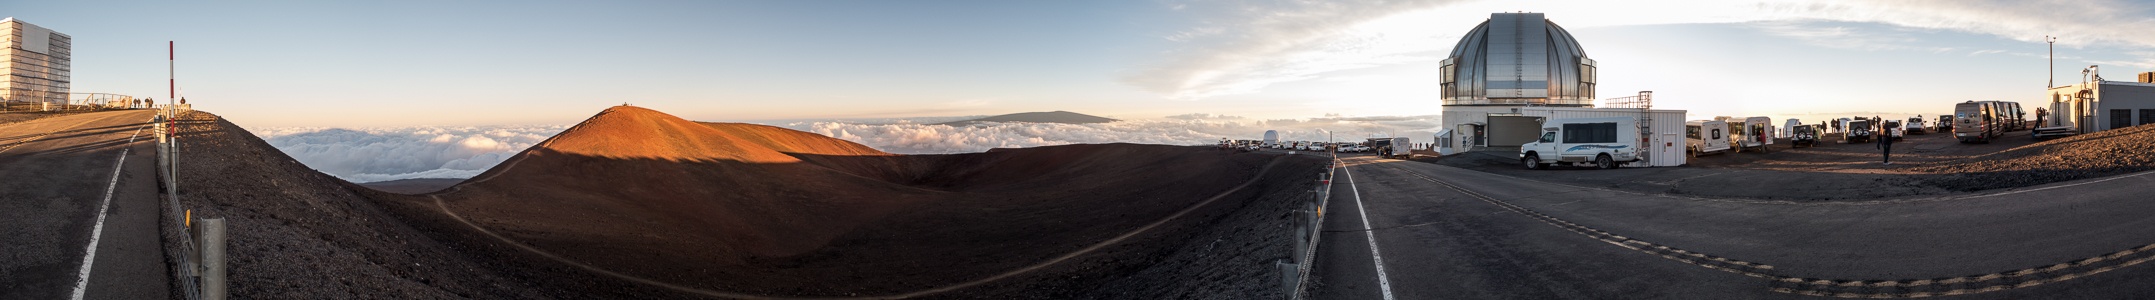 Mauna Kea Mauna-Kea-Observatorium, Gipfel, Mauna Loa, Mauna-Kea-Observatorium